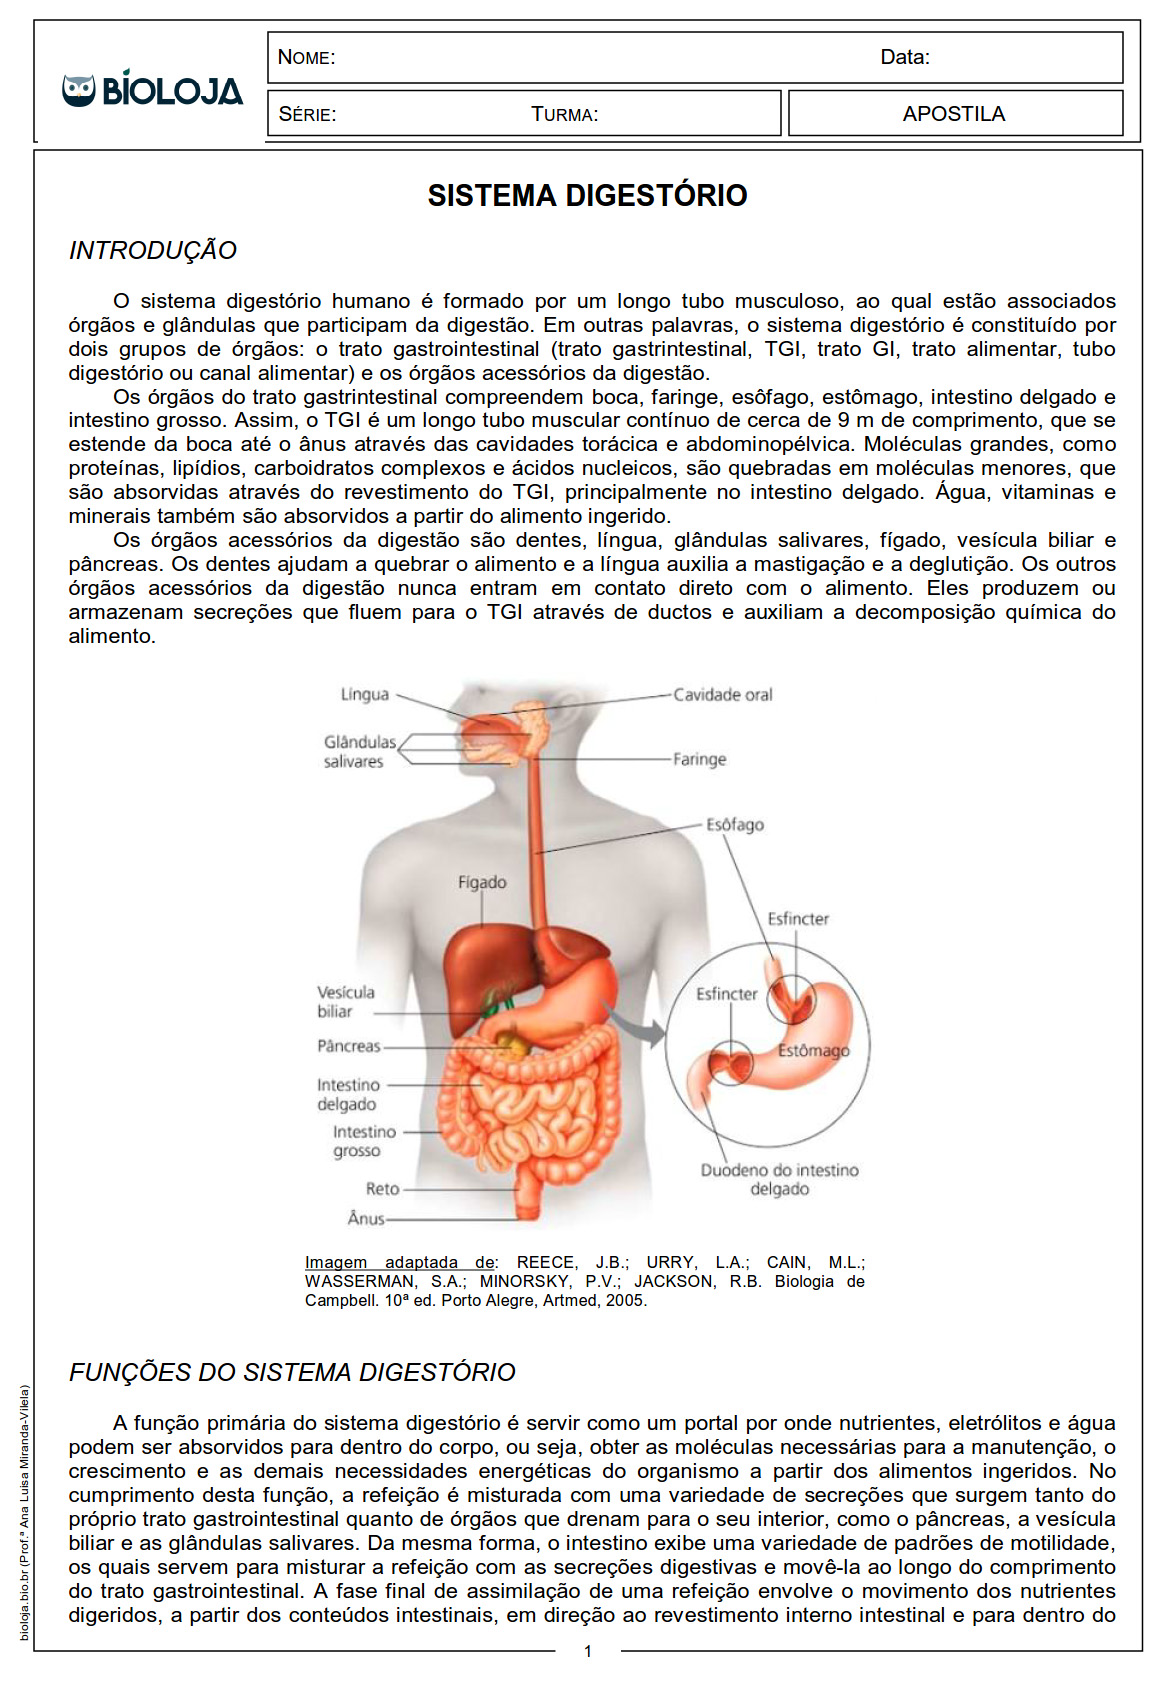 Apostila Fisiologia de órgãos e sistema IV: sistema digestório slide 1